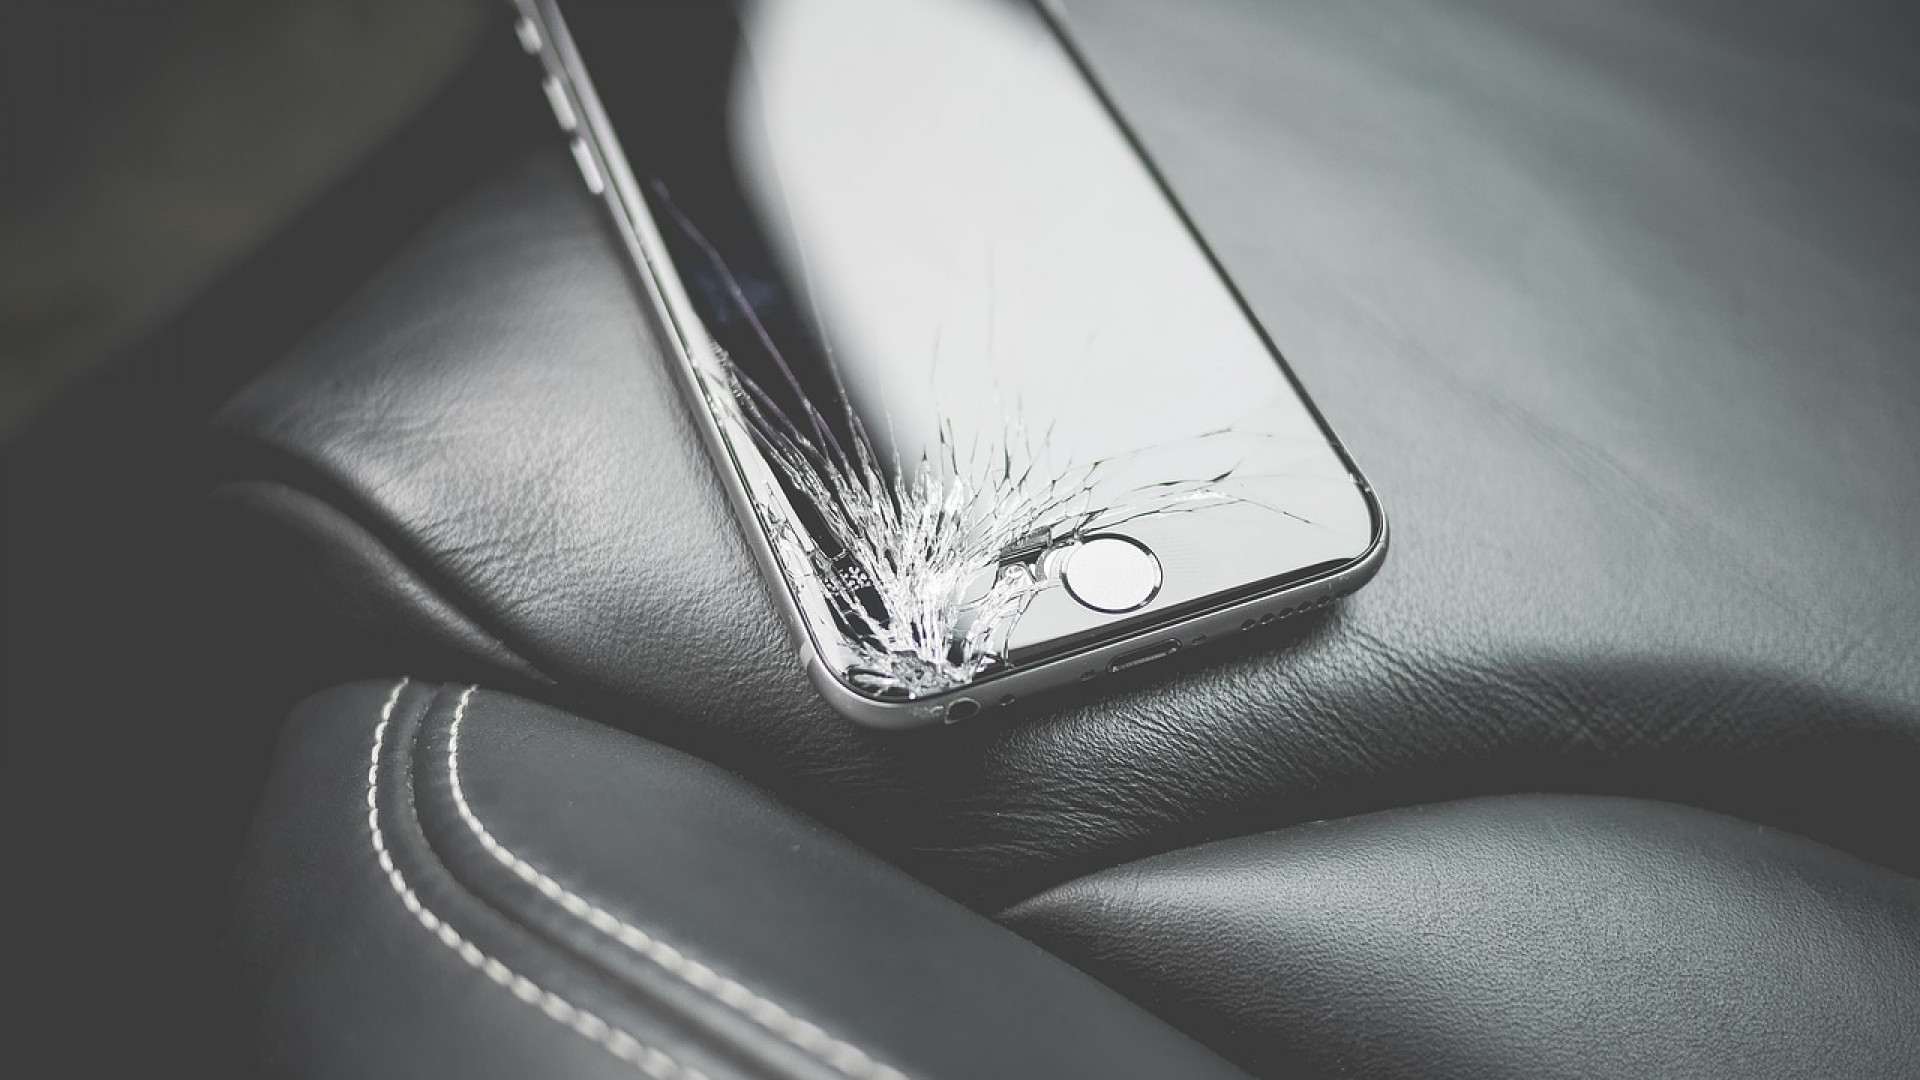 Écran iPhone XR cassé : que faire et comment le remplacer ?